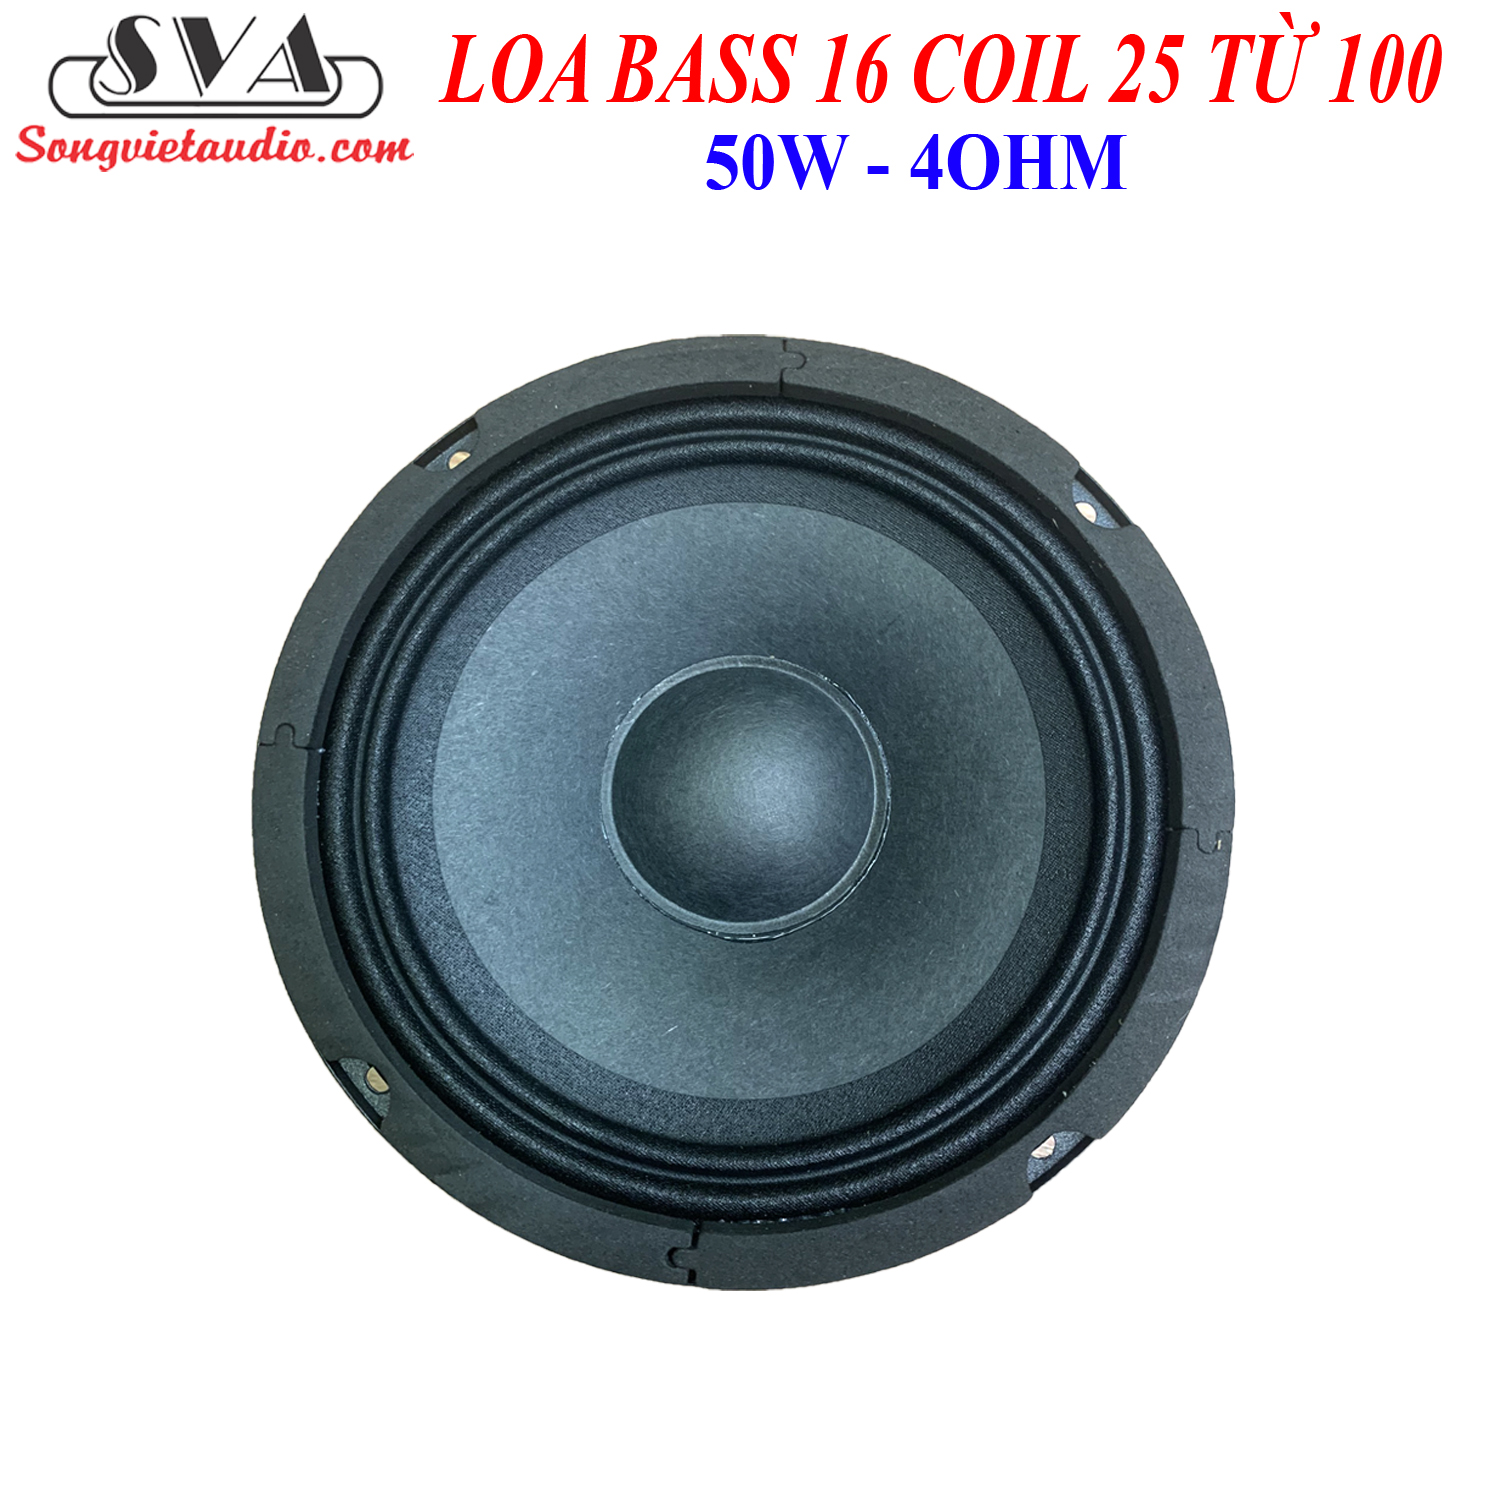 LOA BASS 16 COIL 25 TỪ 100 - 50w - CẶP